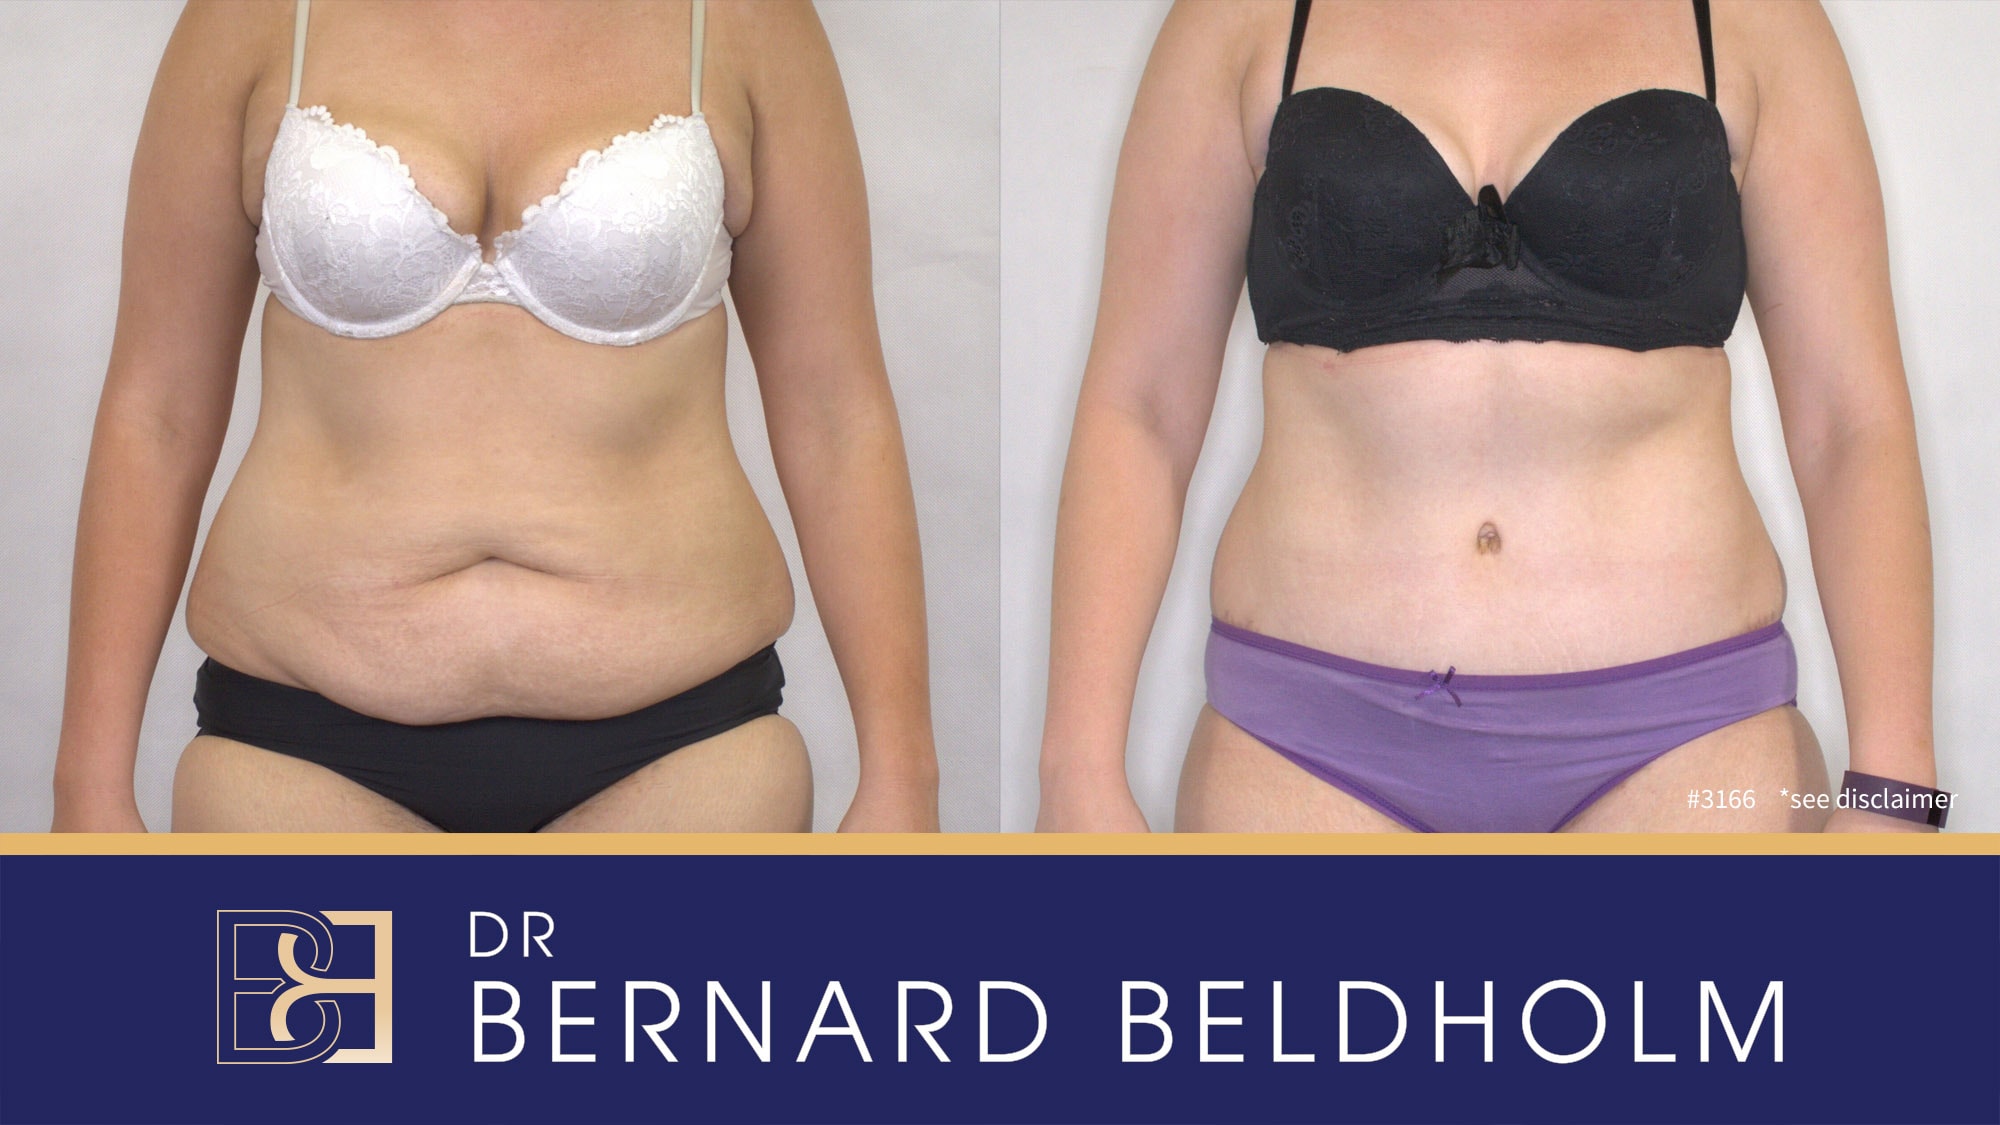 Abdominoplasty with VASER liposuction performed by Dr Bernard Beldholm